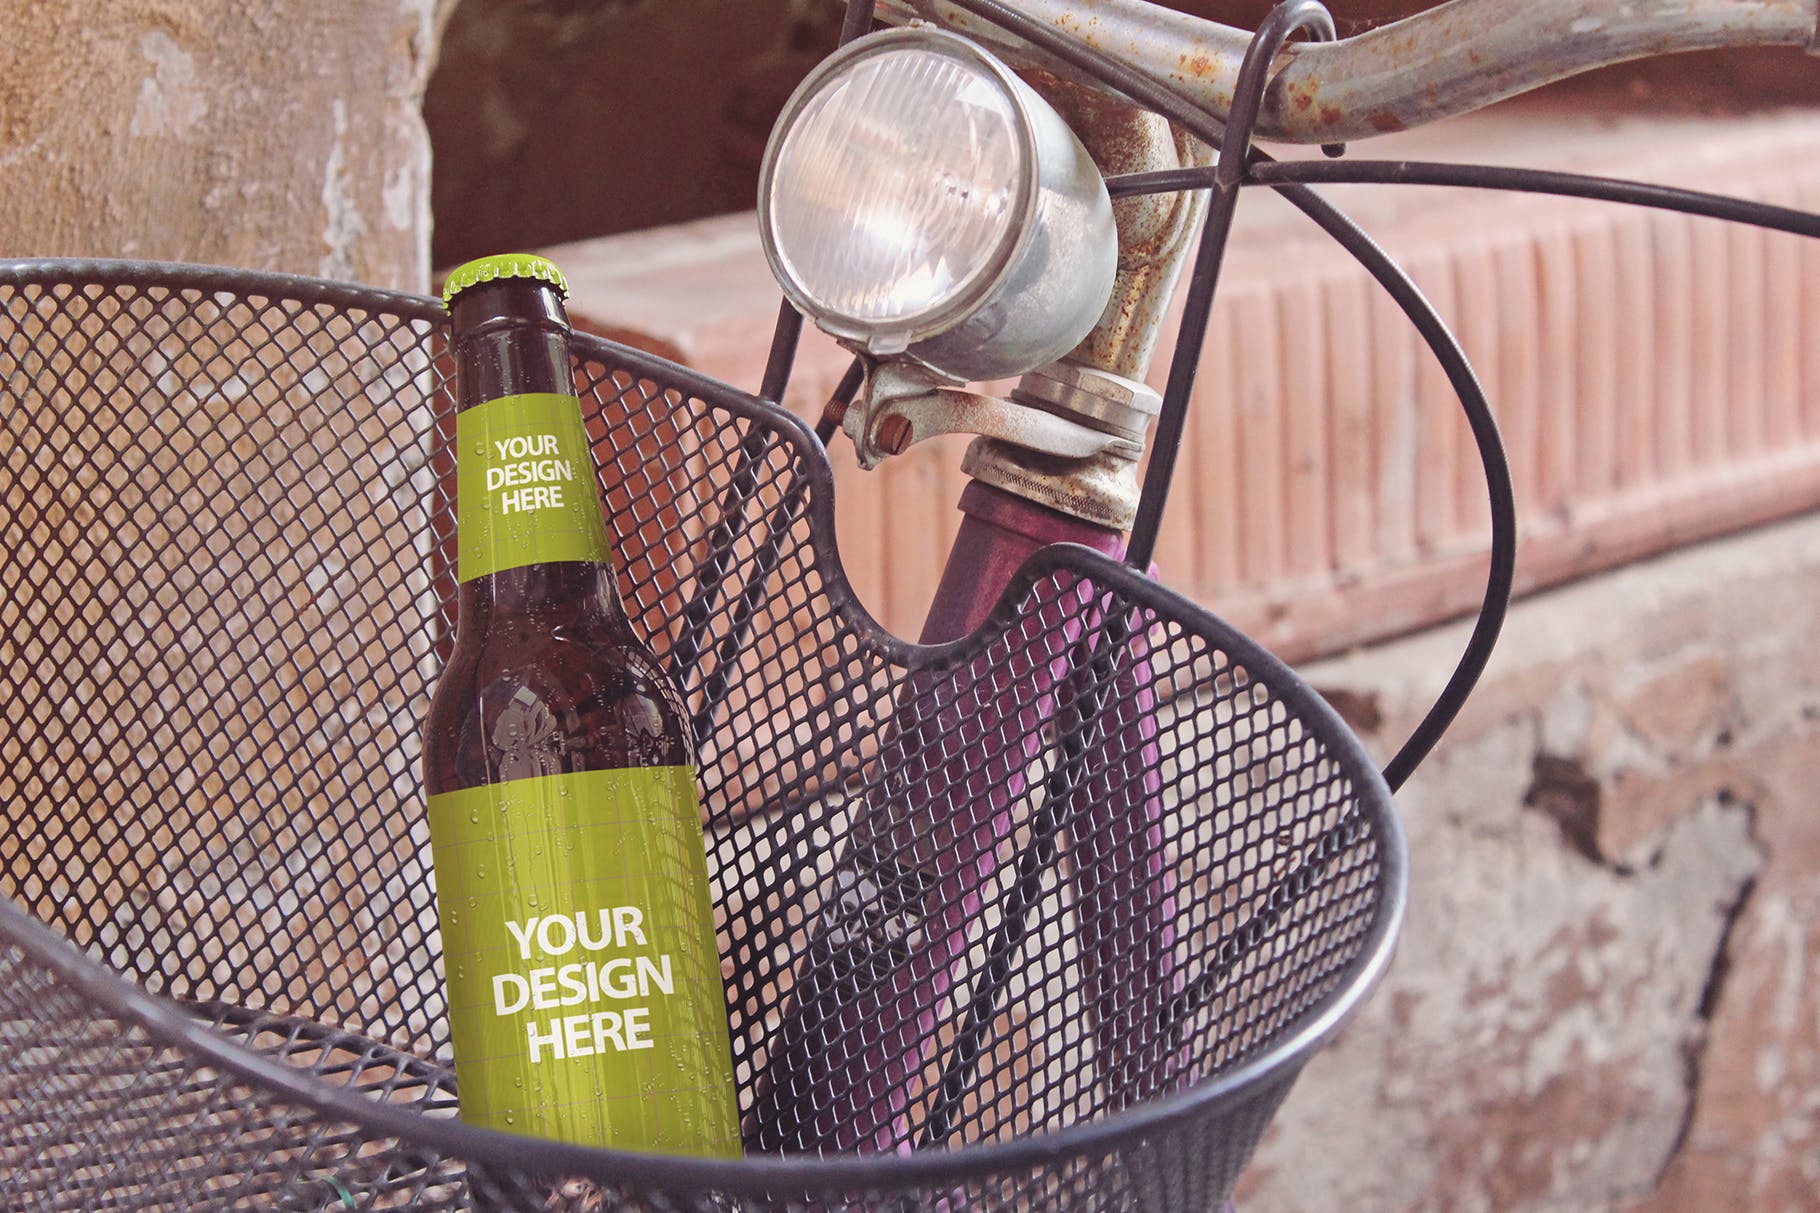 自行车篮啤酒瓶设计图第一素材精选 Bike Basket Beer Mockup插图(1)